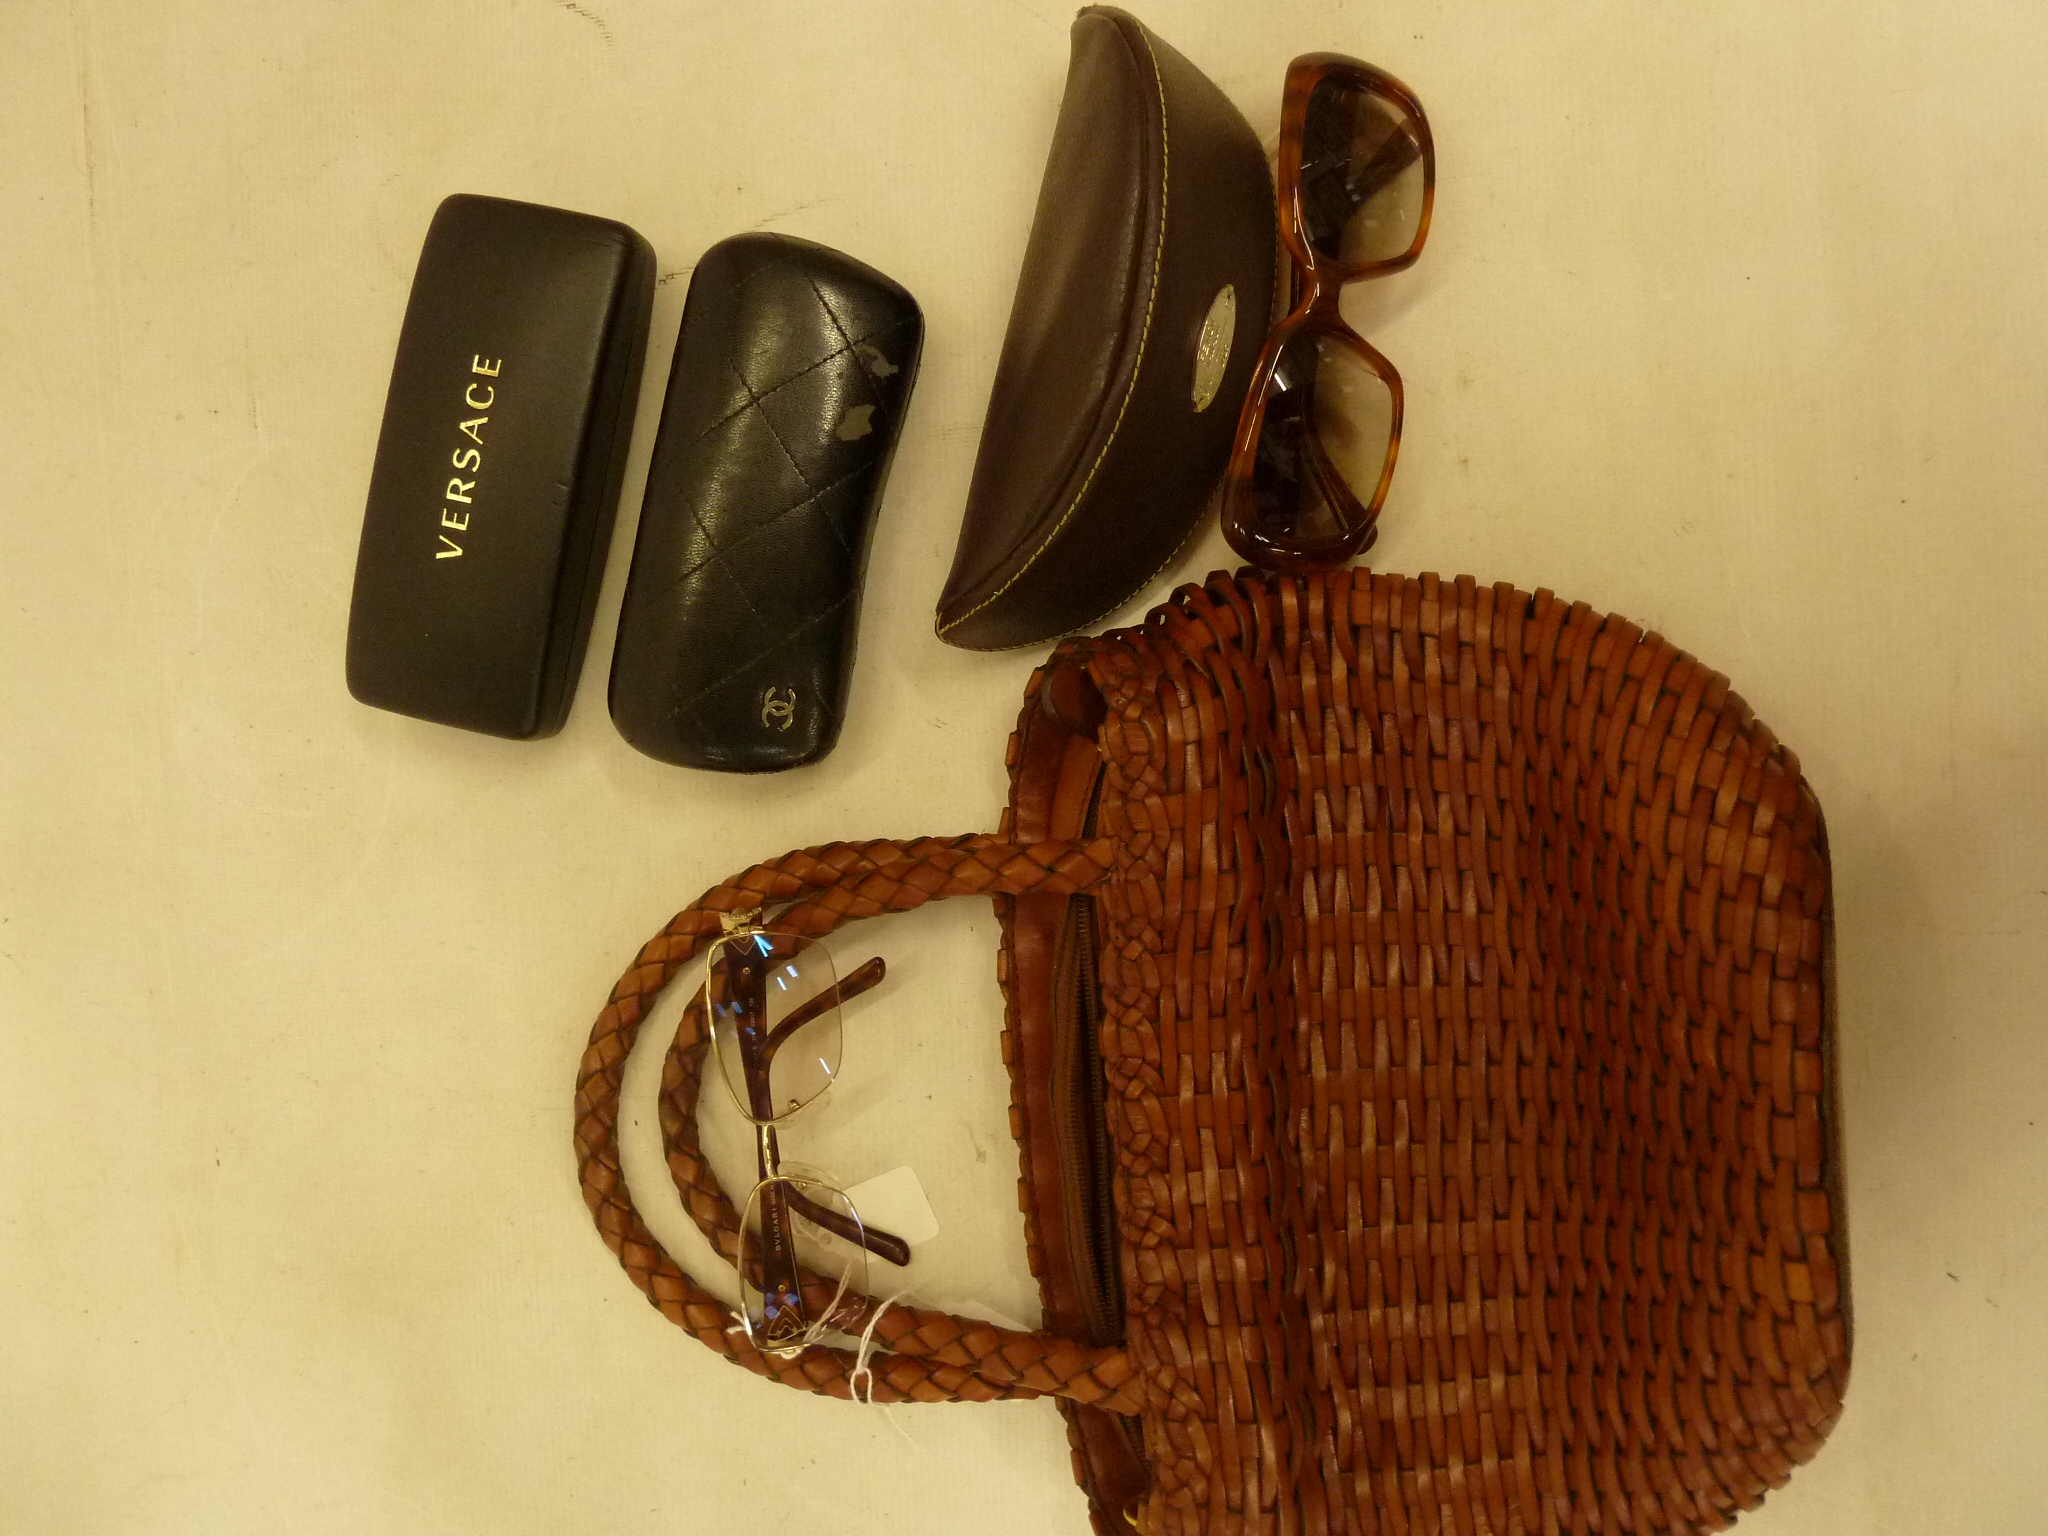 Fendi sunglasses in original Fendi case, a Chanel sunglasses case (no glasses), a pair of Bulgari